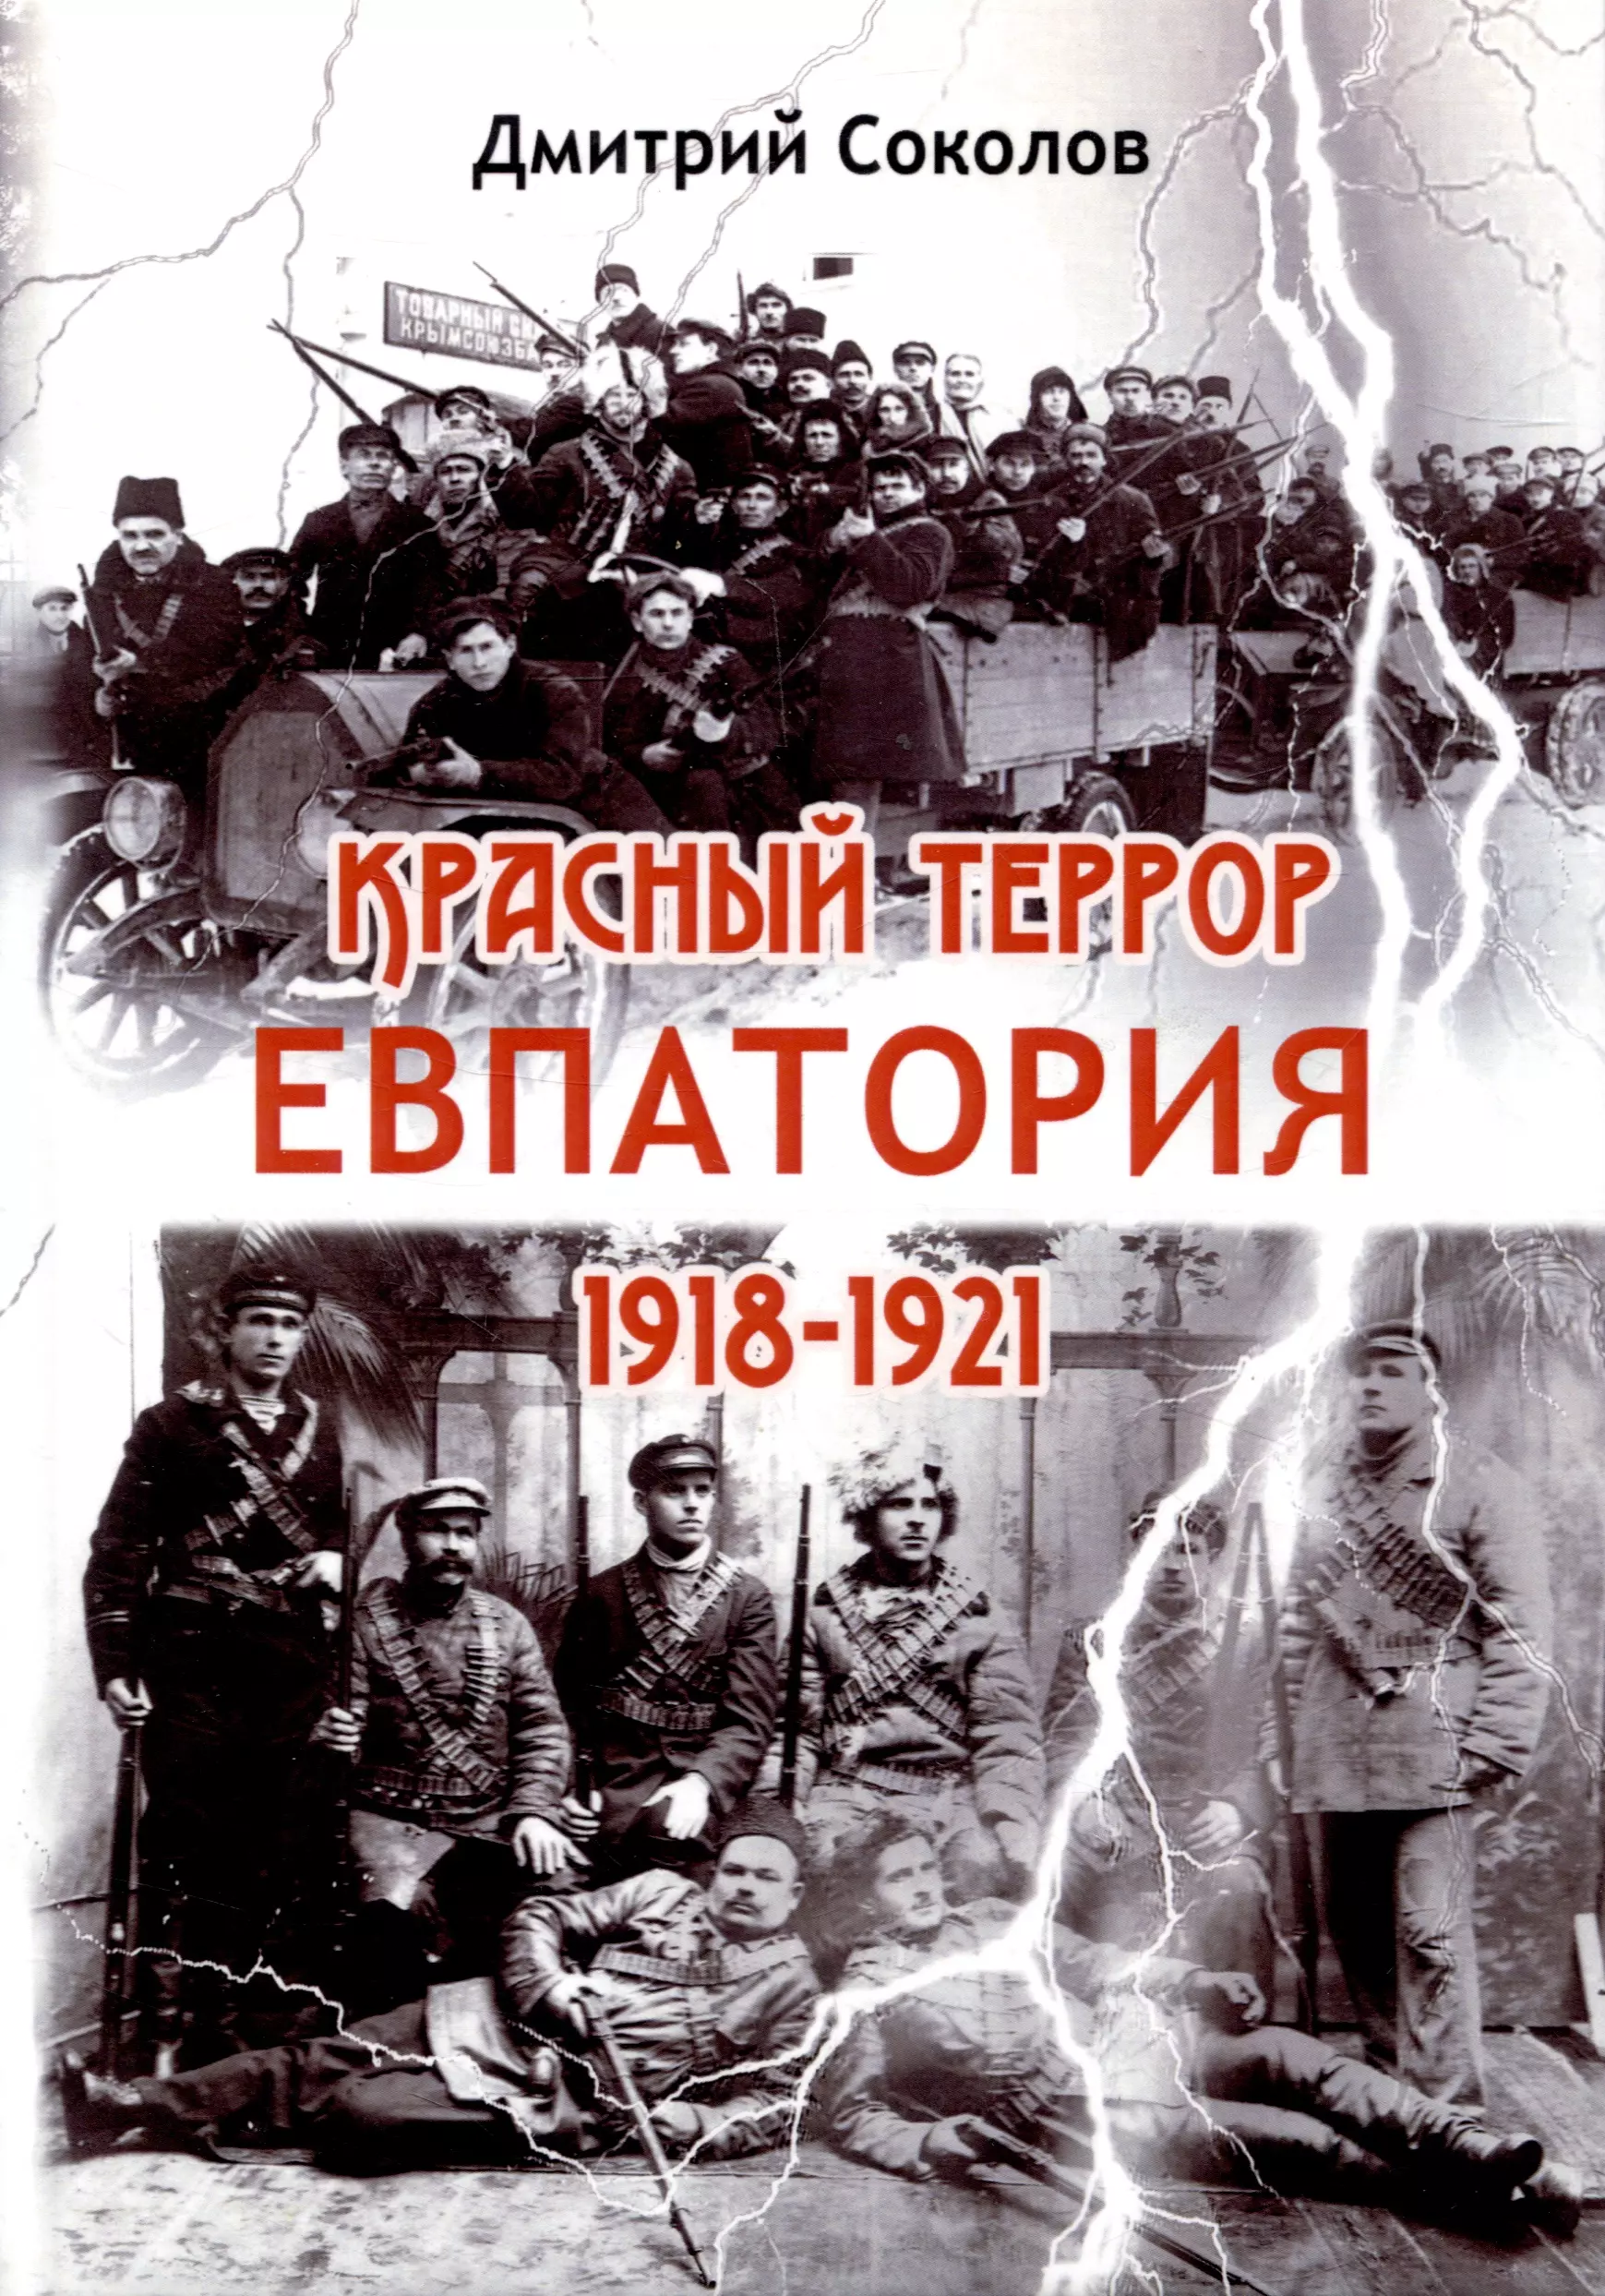 Соколов Дмитрий Витальевич - Красный террор. Евпатория. 1918-1921 гг.